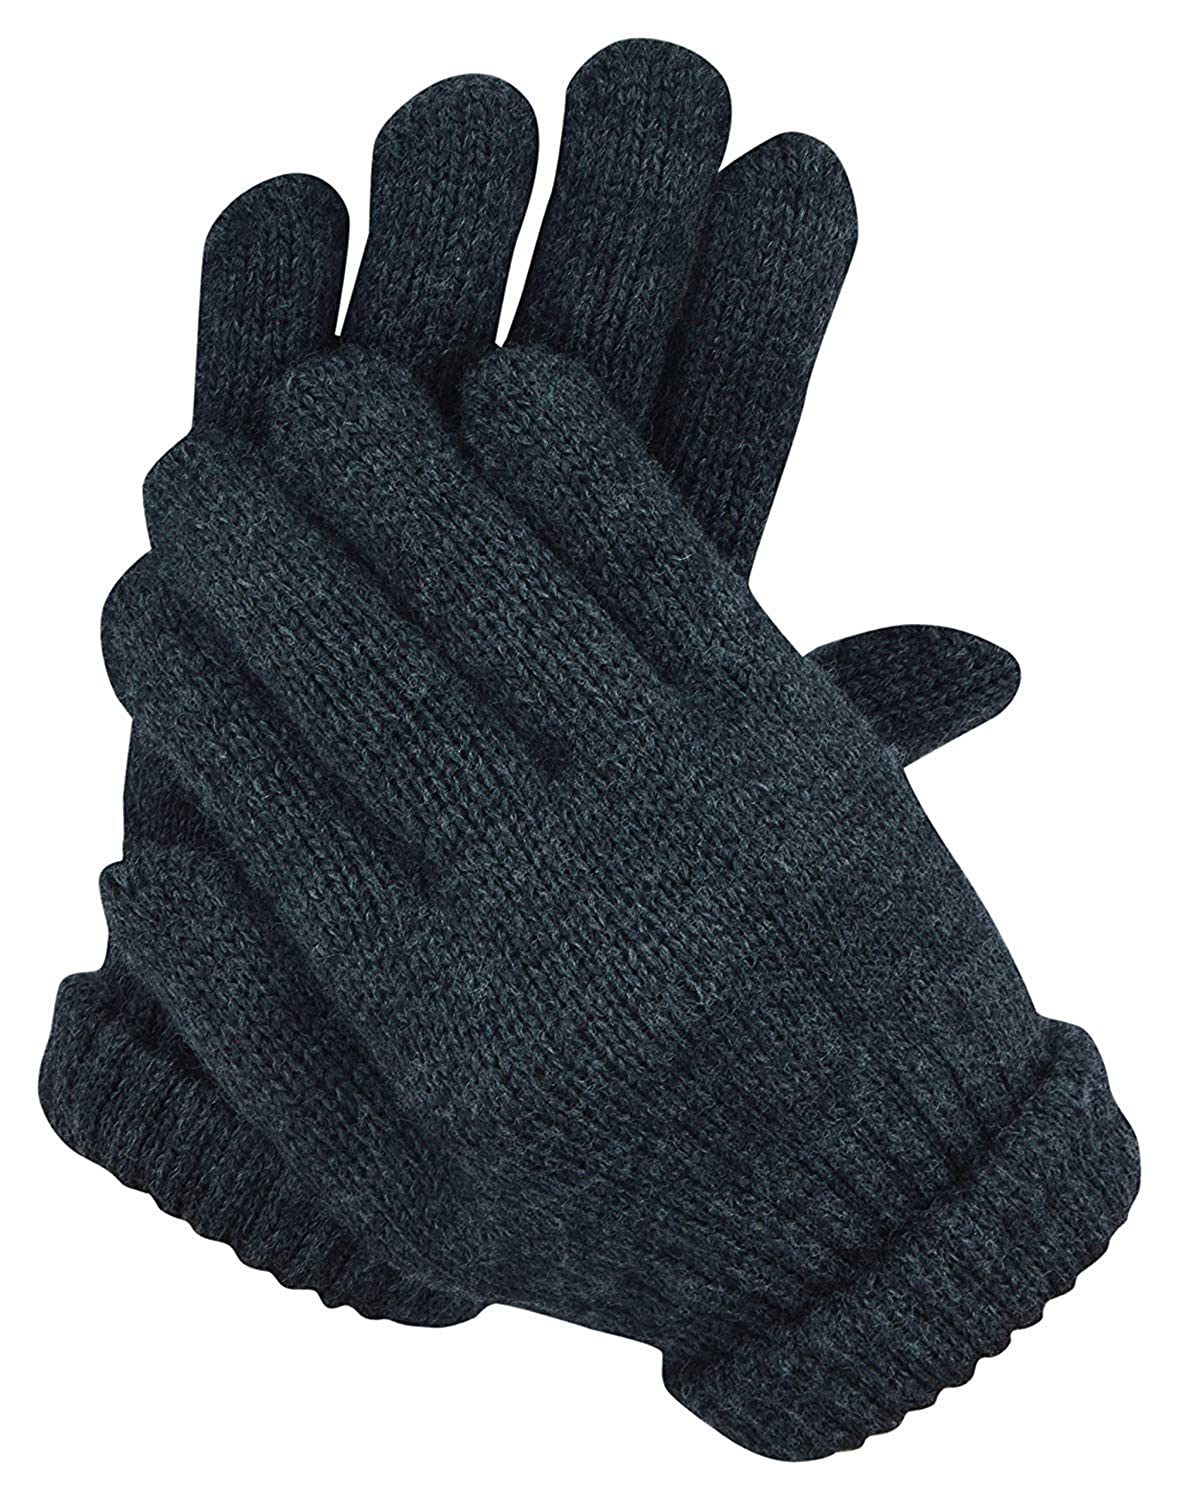 Digital shopee woollen knitted hands gloves